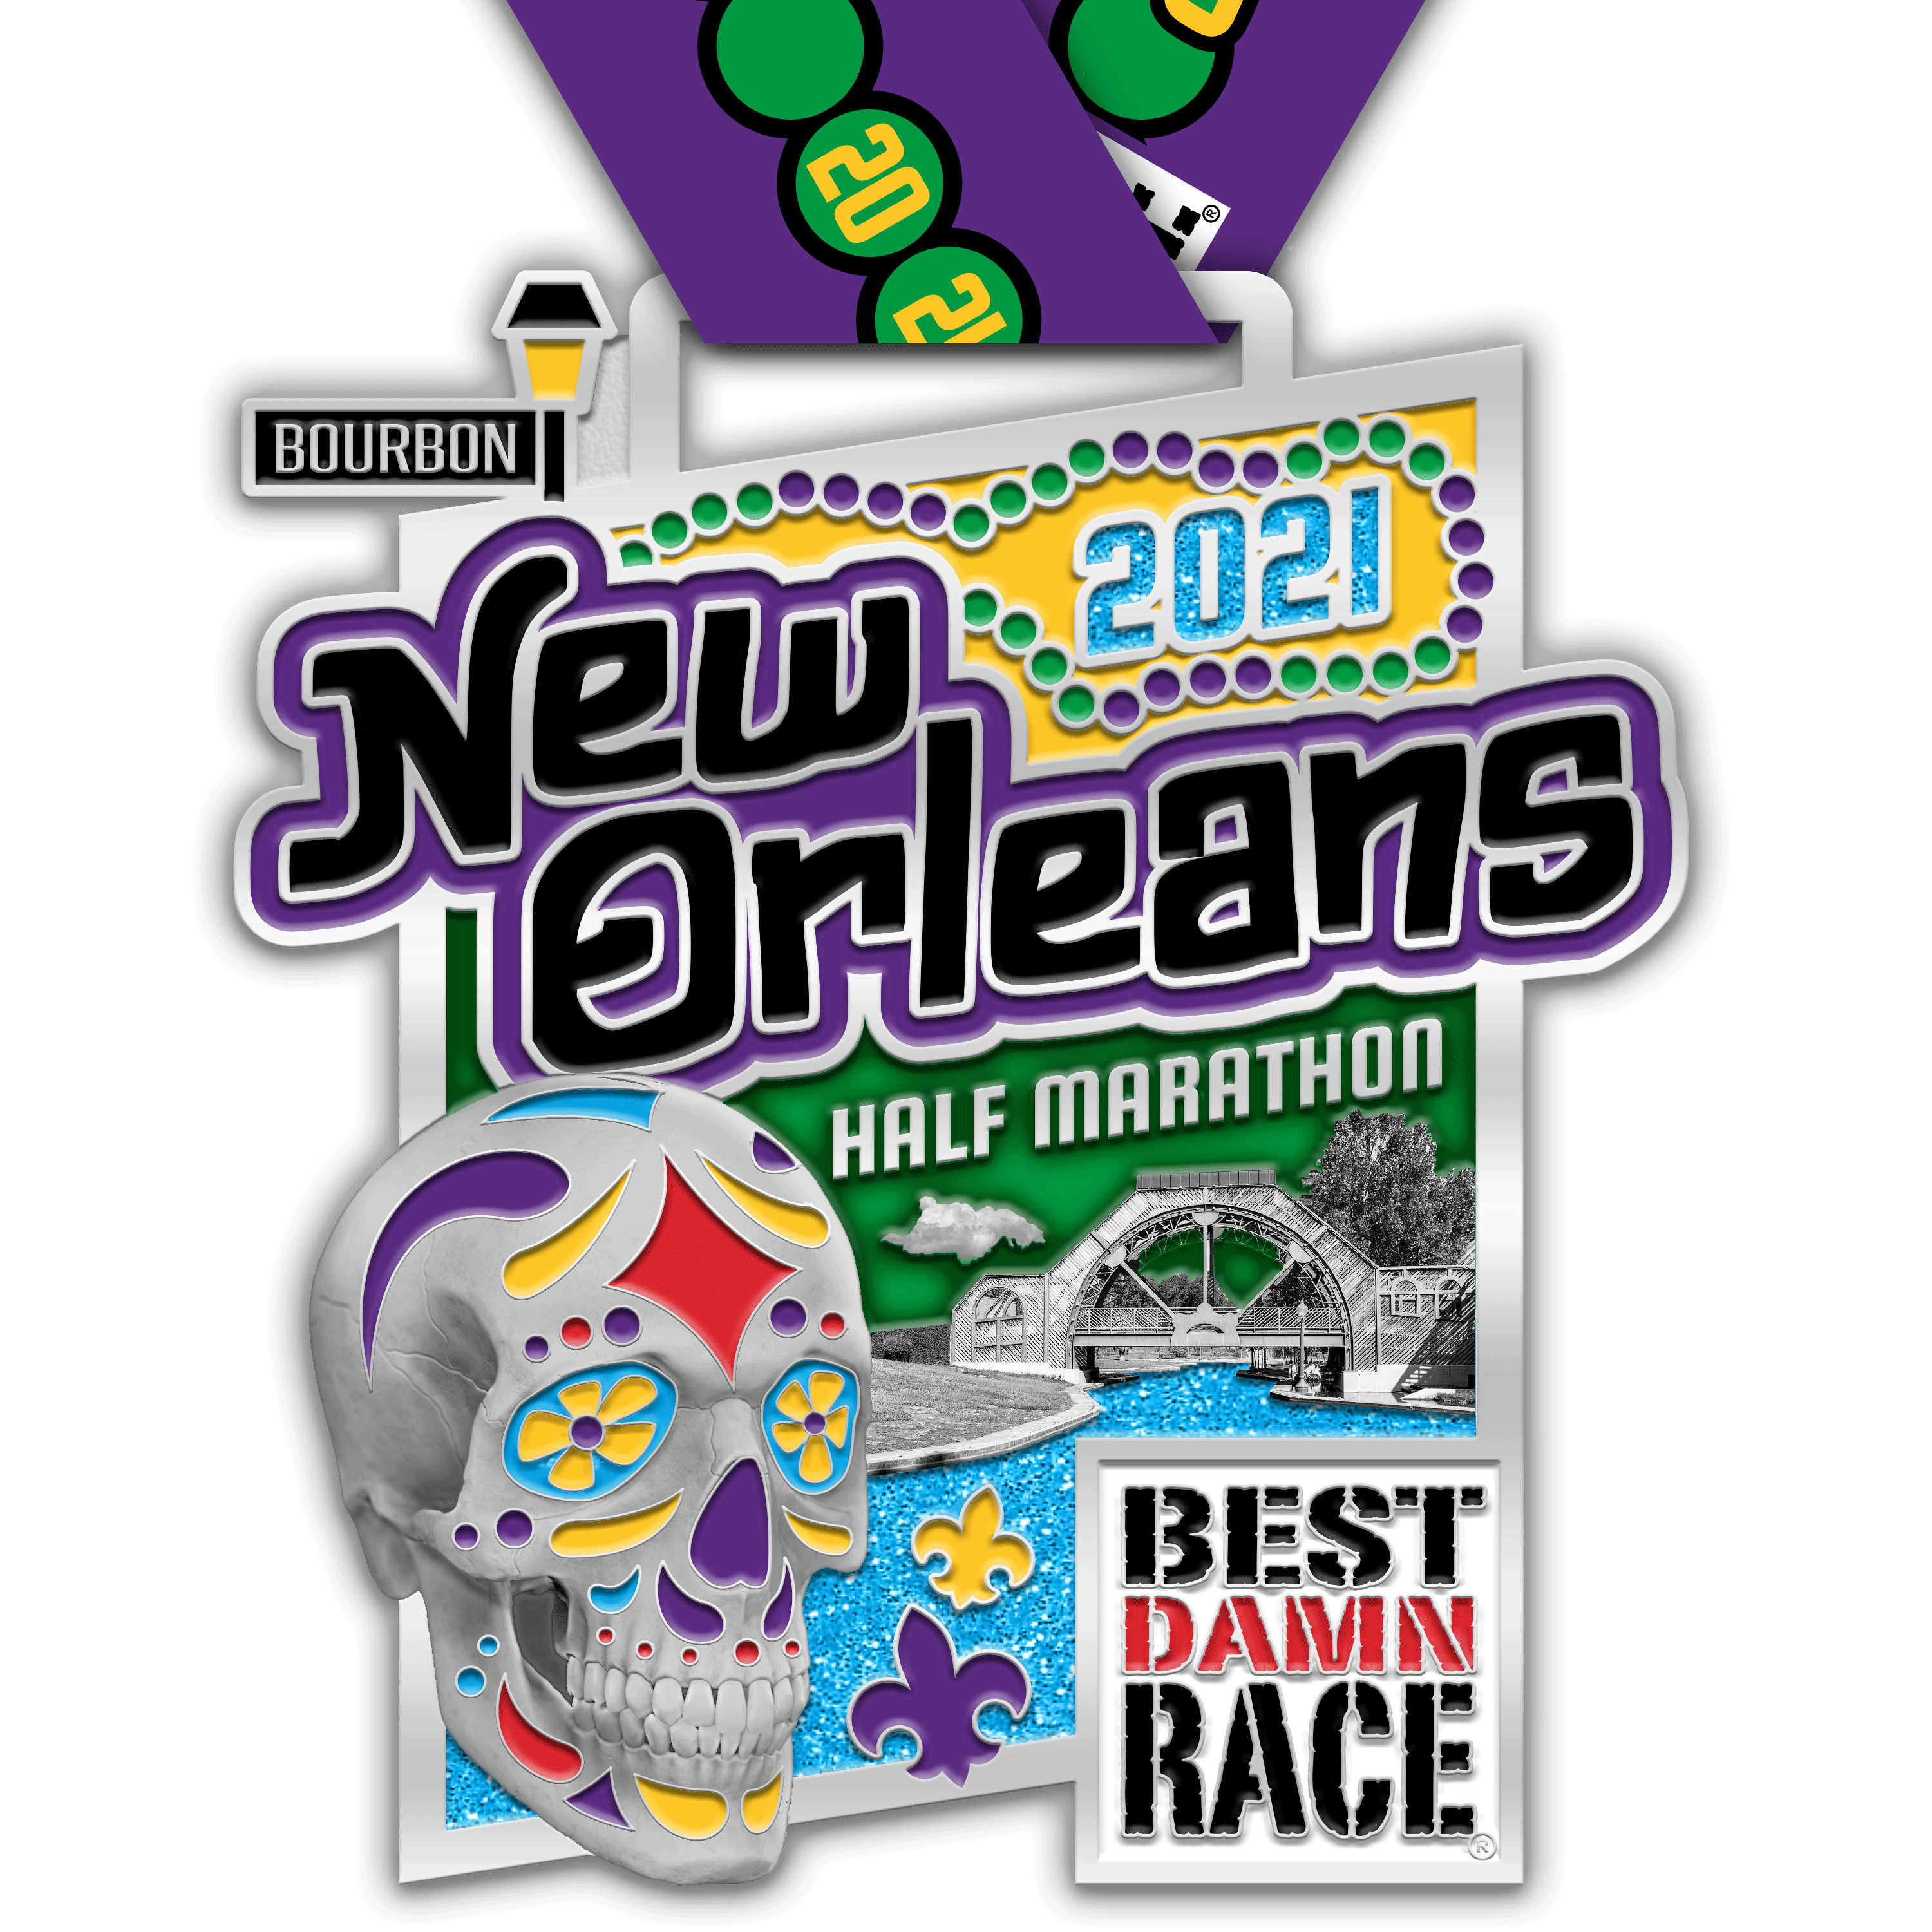 The Bling! Best Damn Race New Orleans